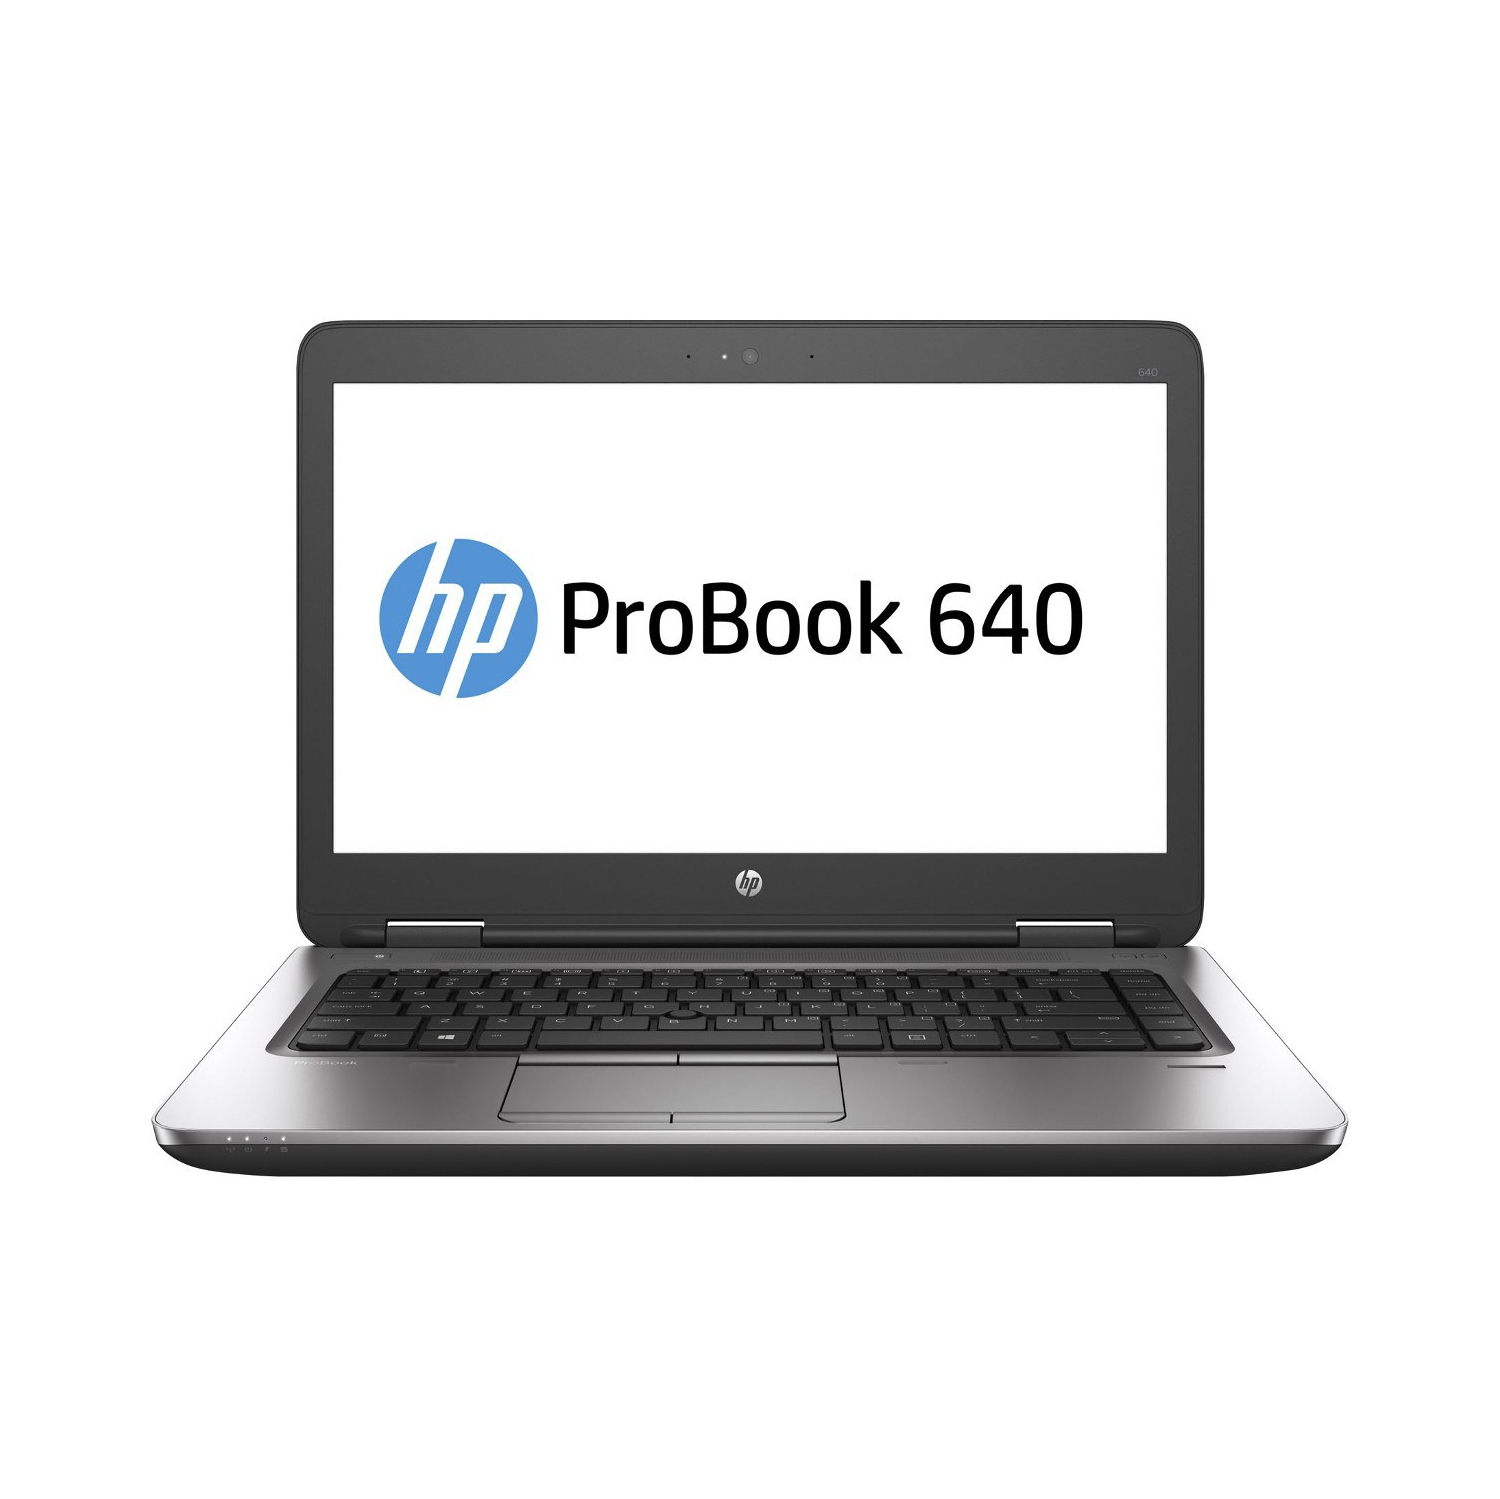 Refurbished (Excellent) - HP ProBook 640 G2 14" Laptop, Intel Core i7 6600U up to 3.4 GHz, 8G DDR4, 512G SSD, VGA, DP, Win10P64 (EN/FR/ES)